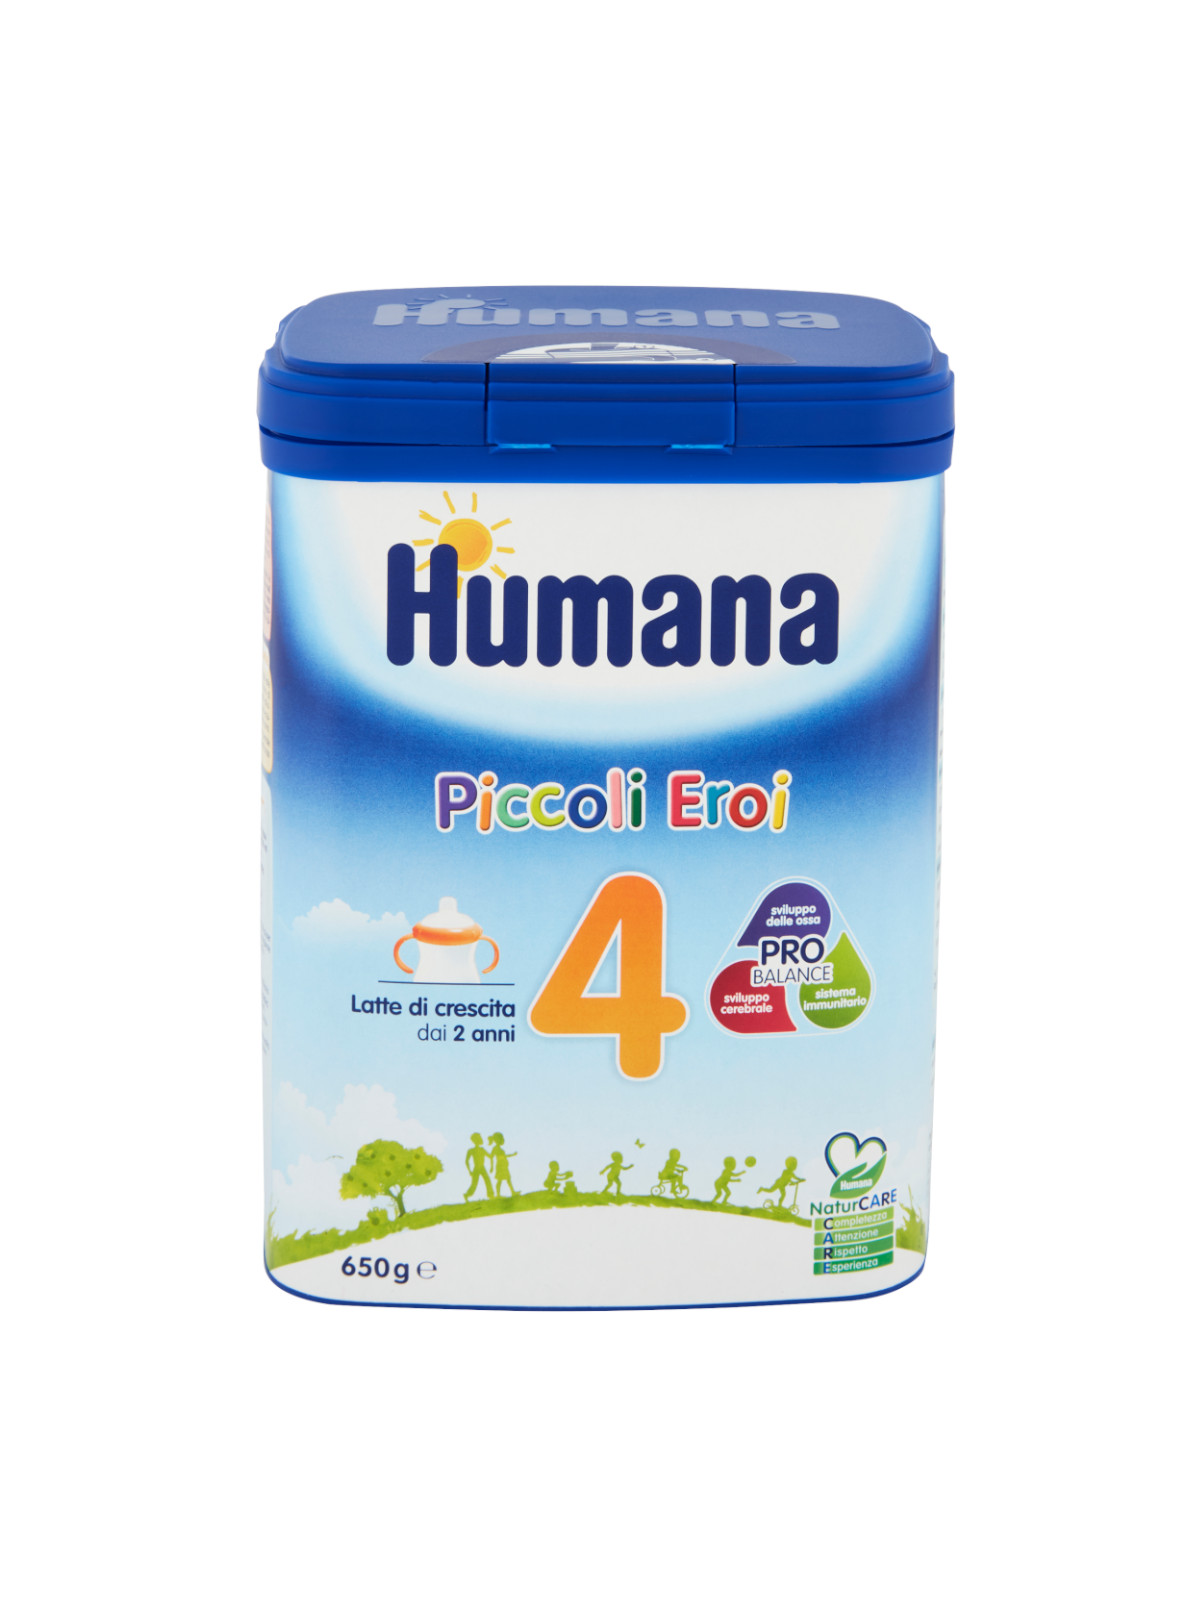 Humana 4 probalance polvere 650 gr - Humana